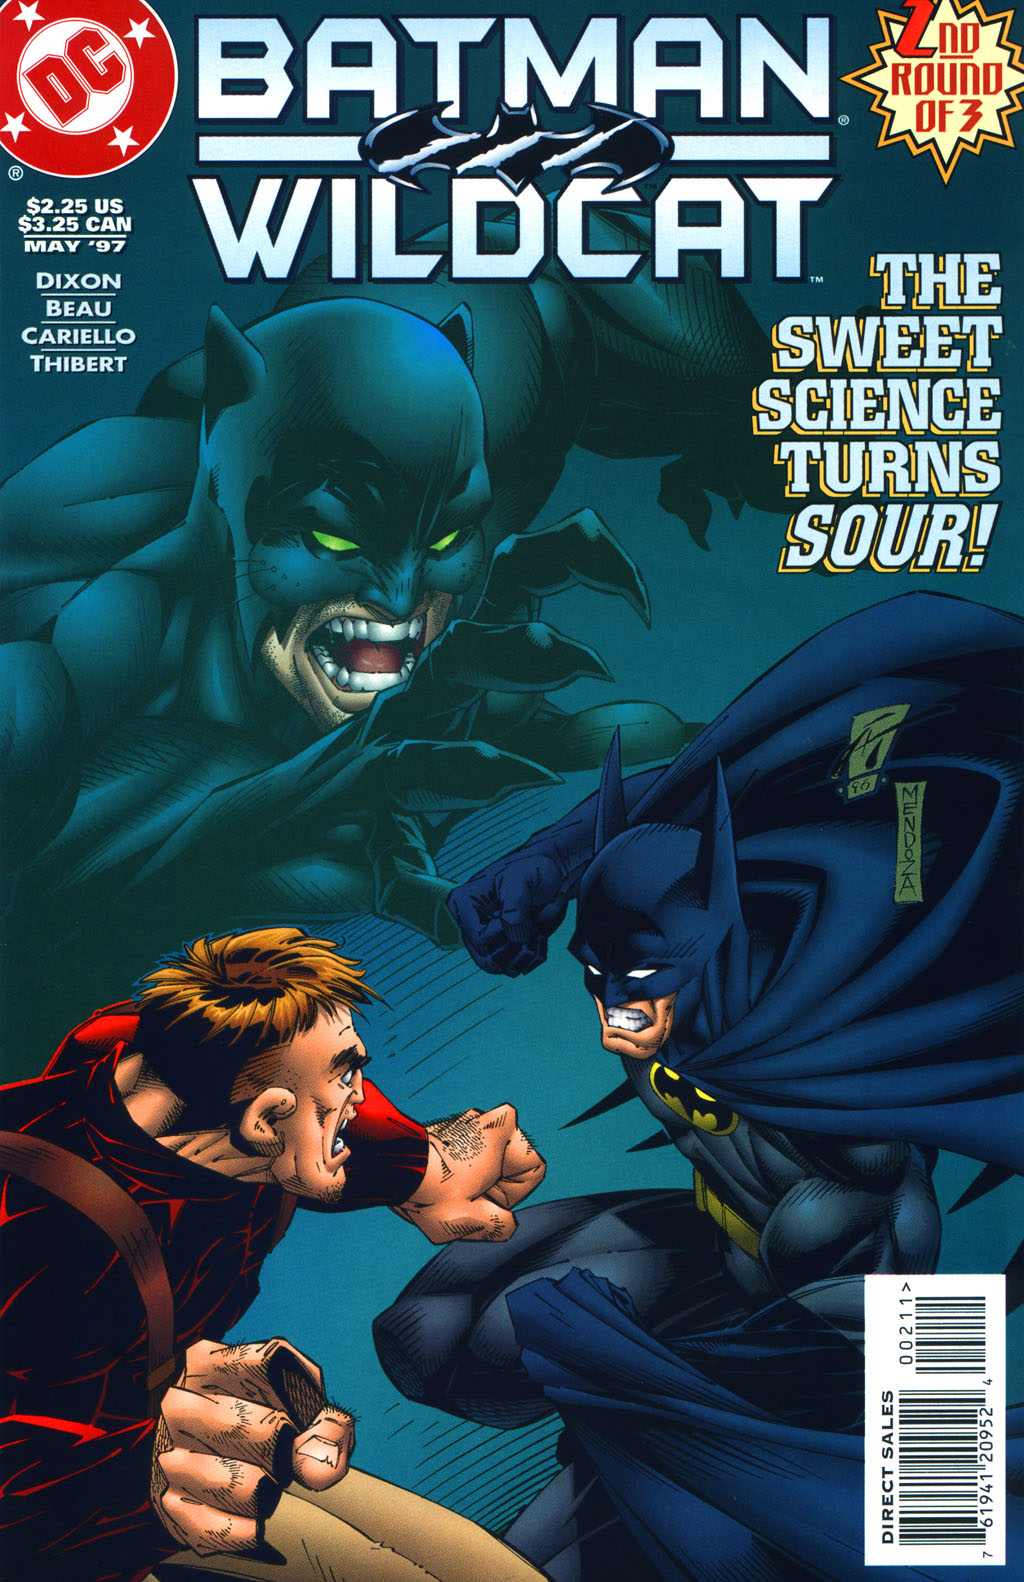 Read online Batman/Wildcat comic -  Issue #2 - 1